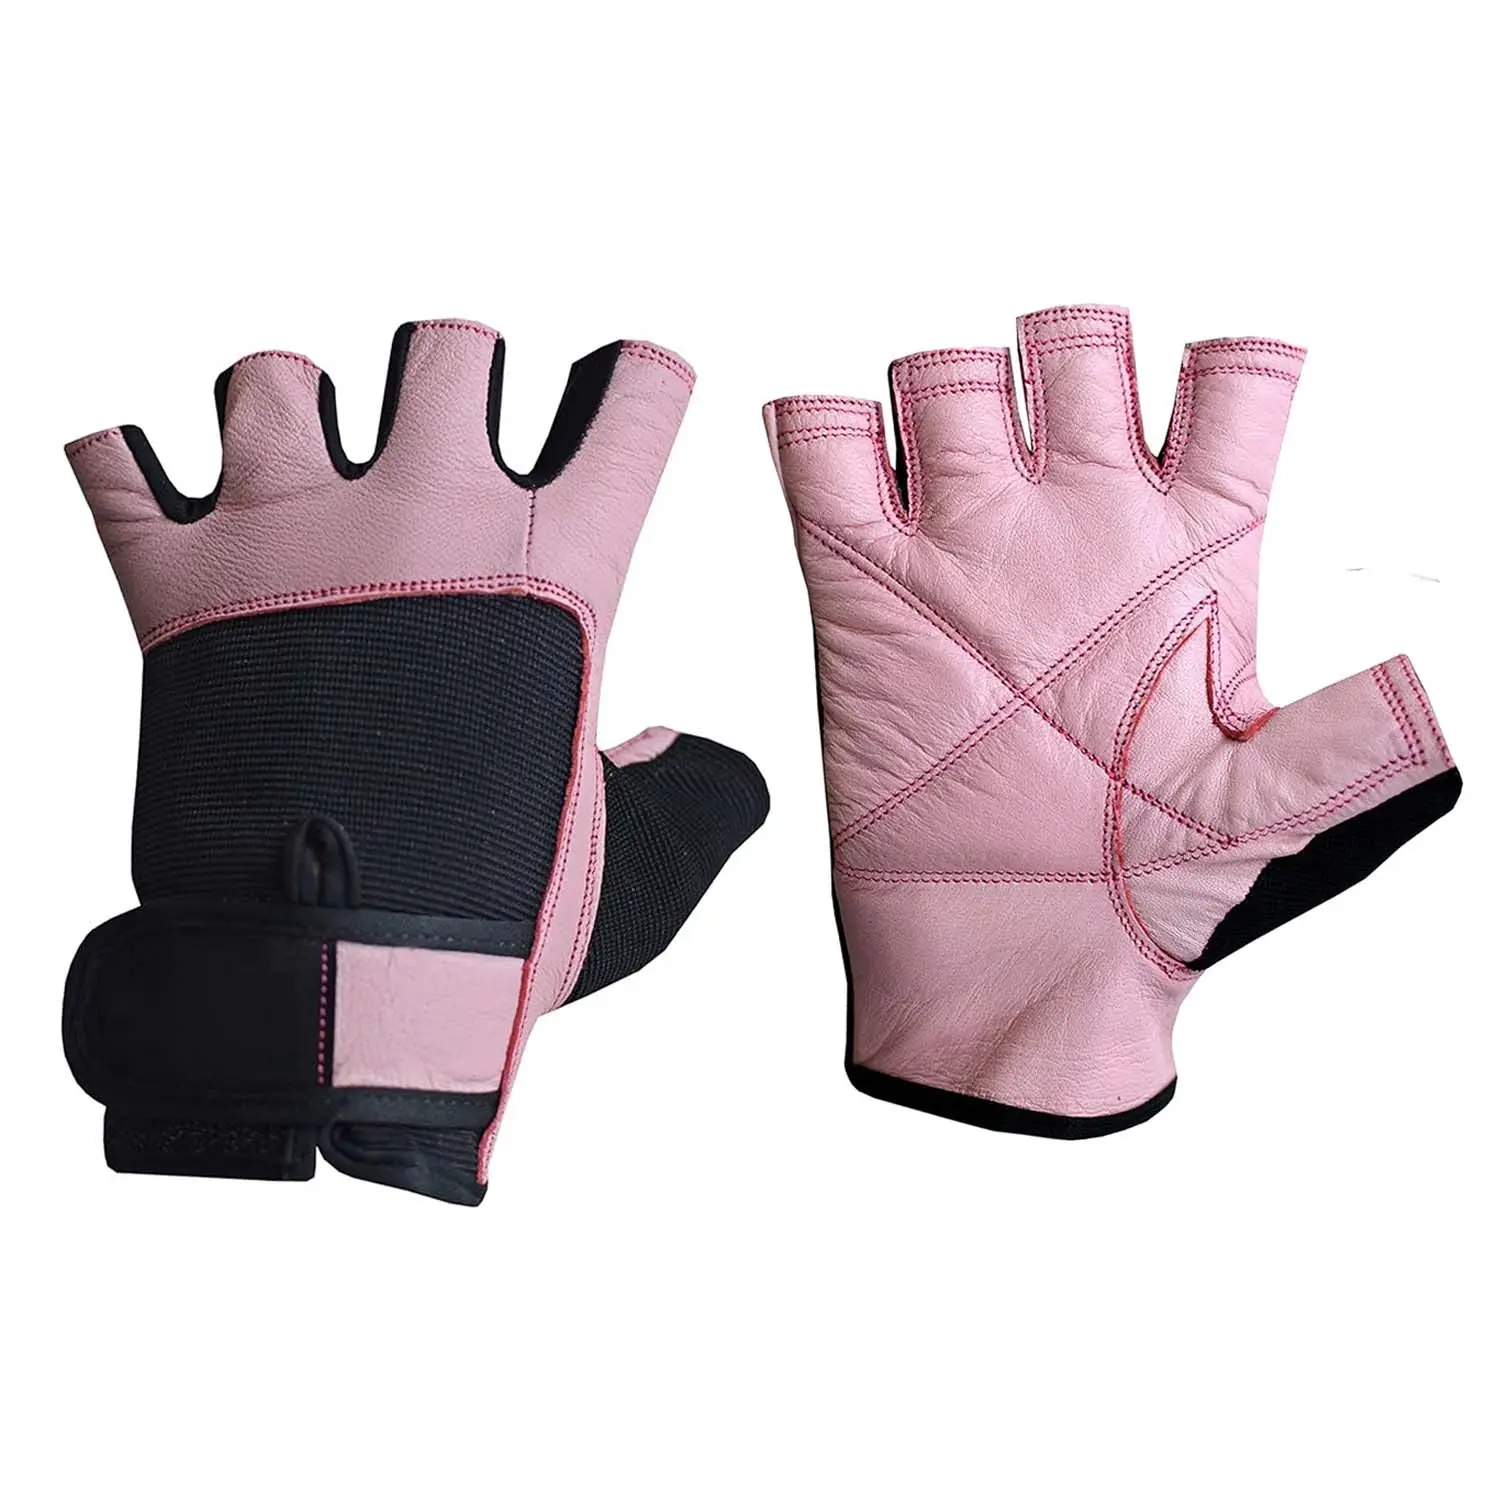 Di alta qualità in pelle rosa signore sollevamento pesi Body Building guanti donne palestra allenamento Fitness senza dita guanti